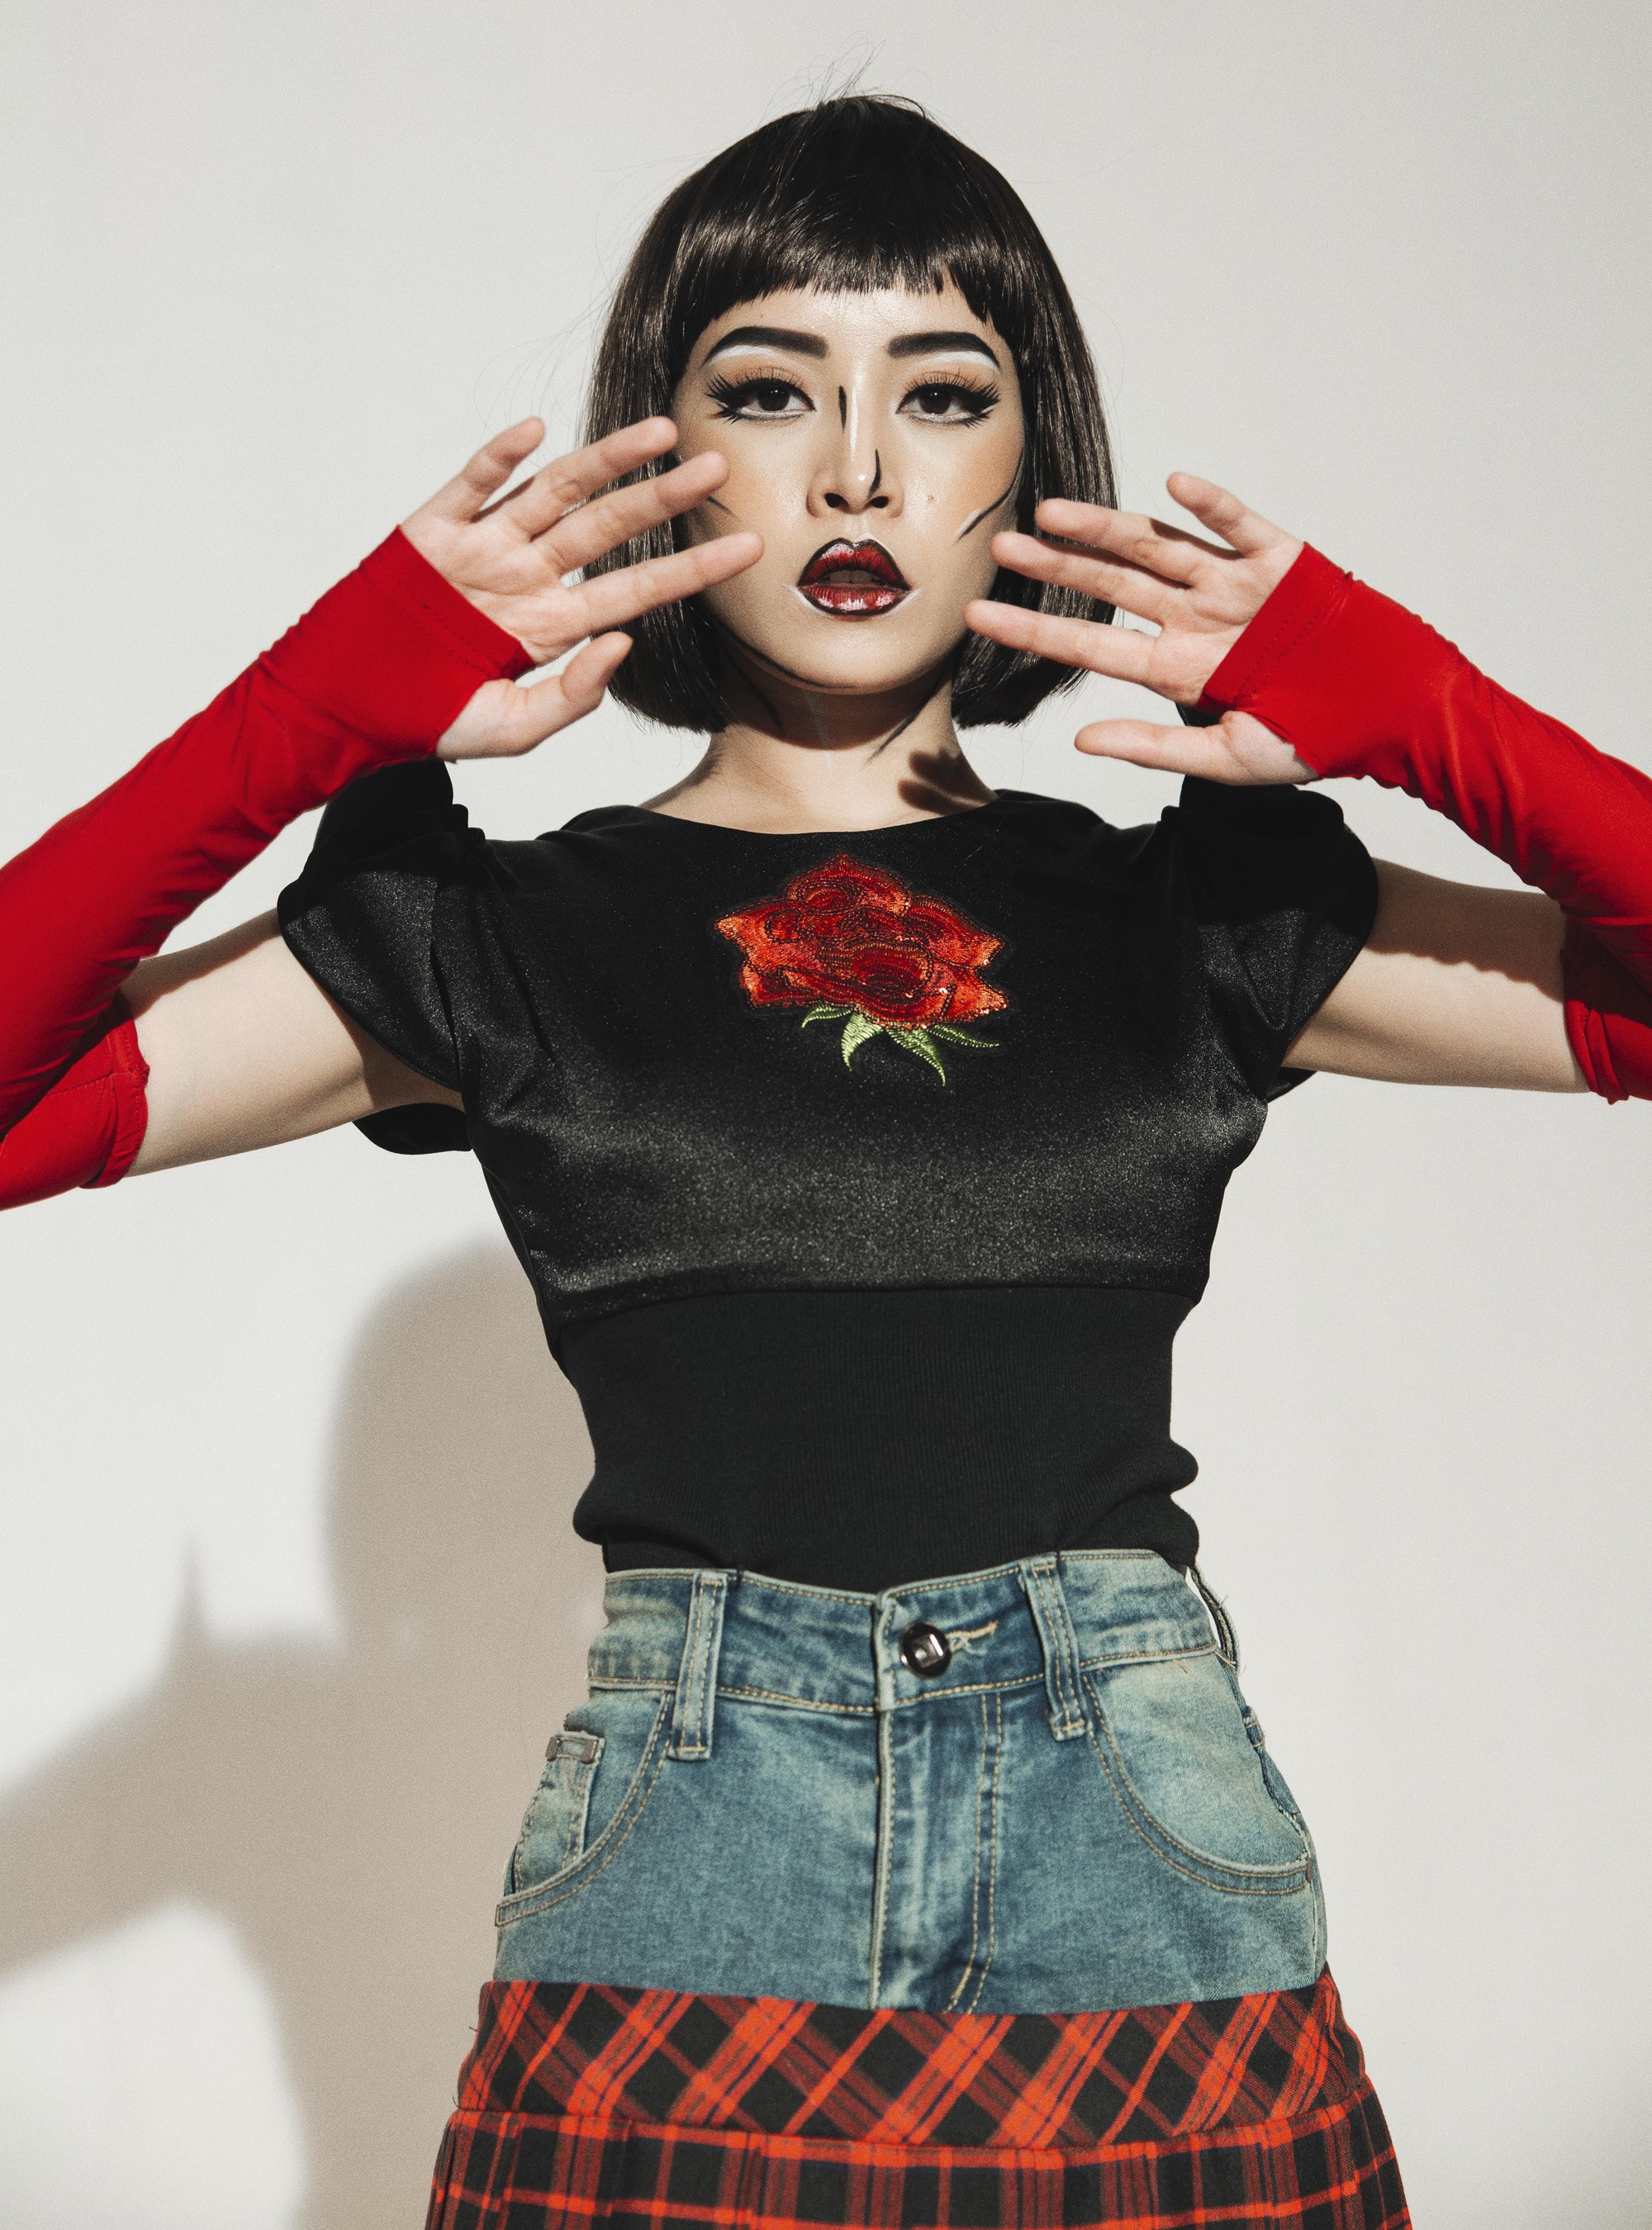 Chi Pu tung MV Dance lạ mắt với vũ đạo độc đáo, thực hiện 2 phiên bản cho sản phẩm trở lại - Ảnh 6.